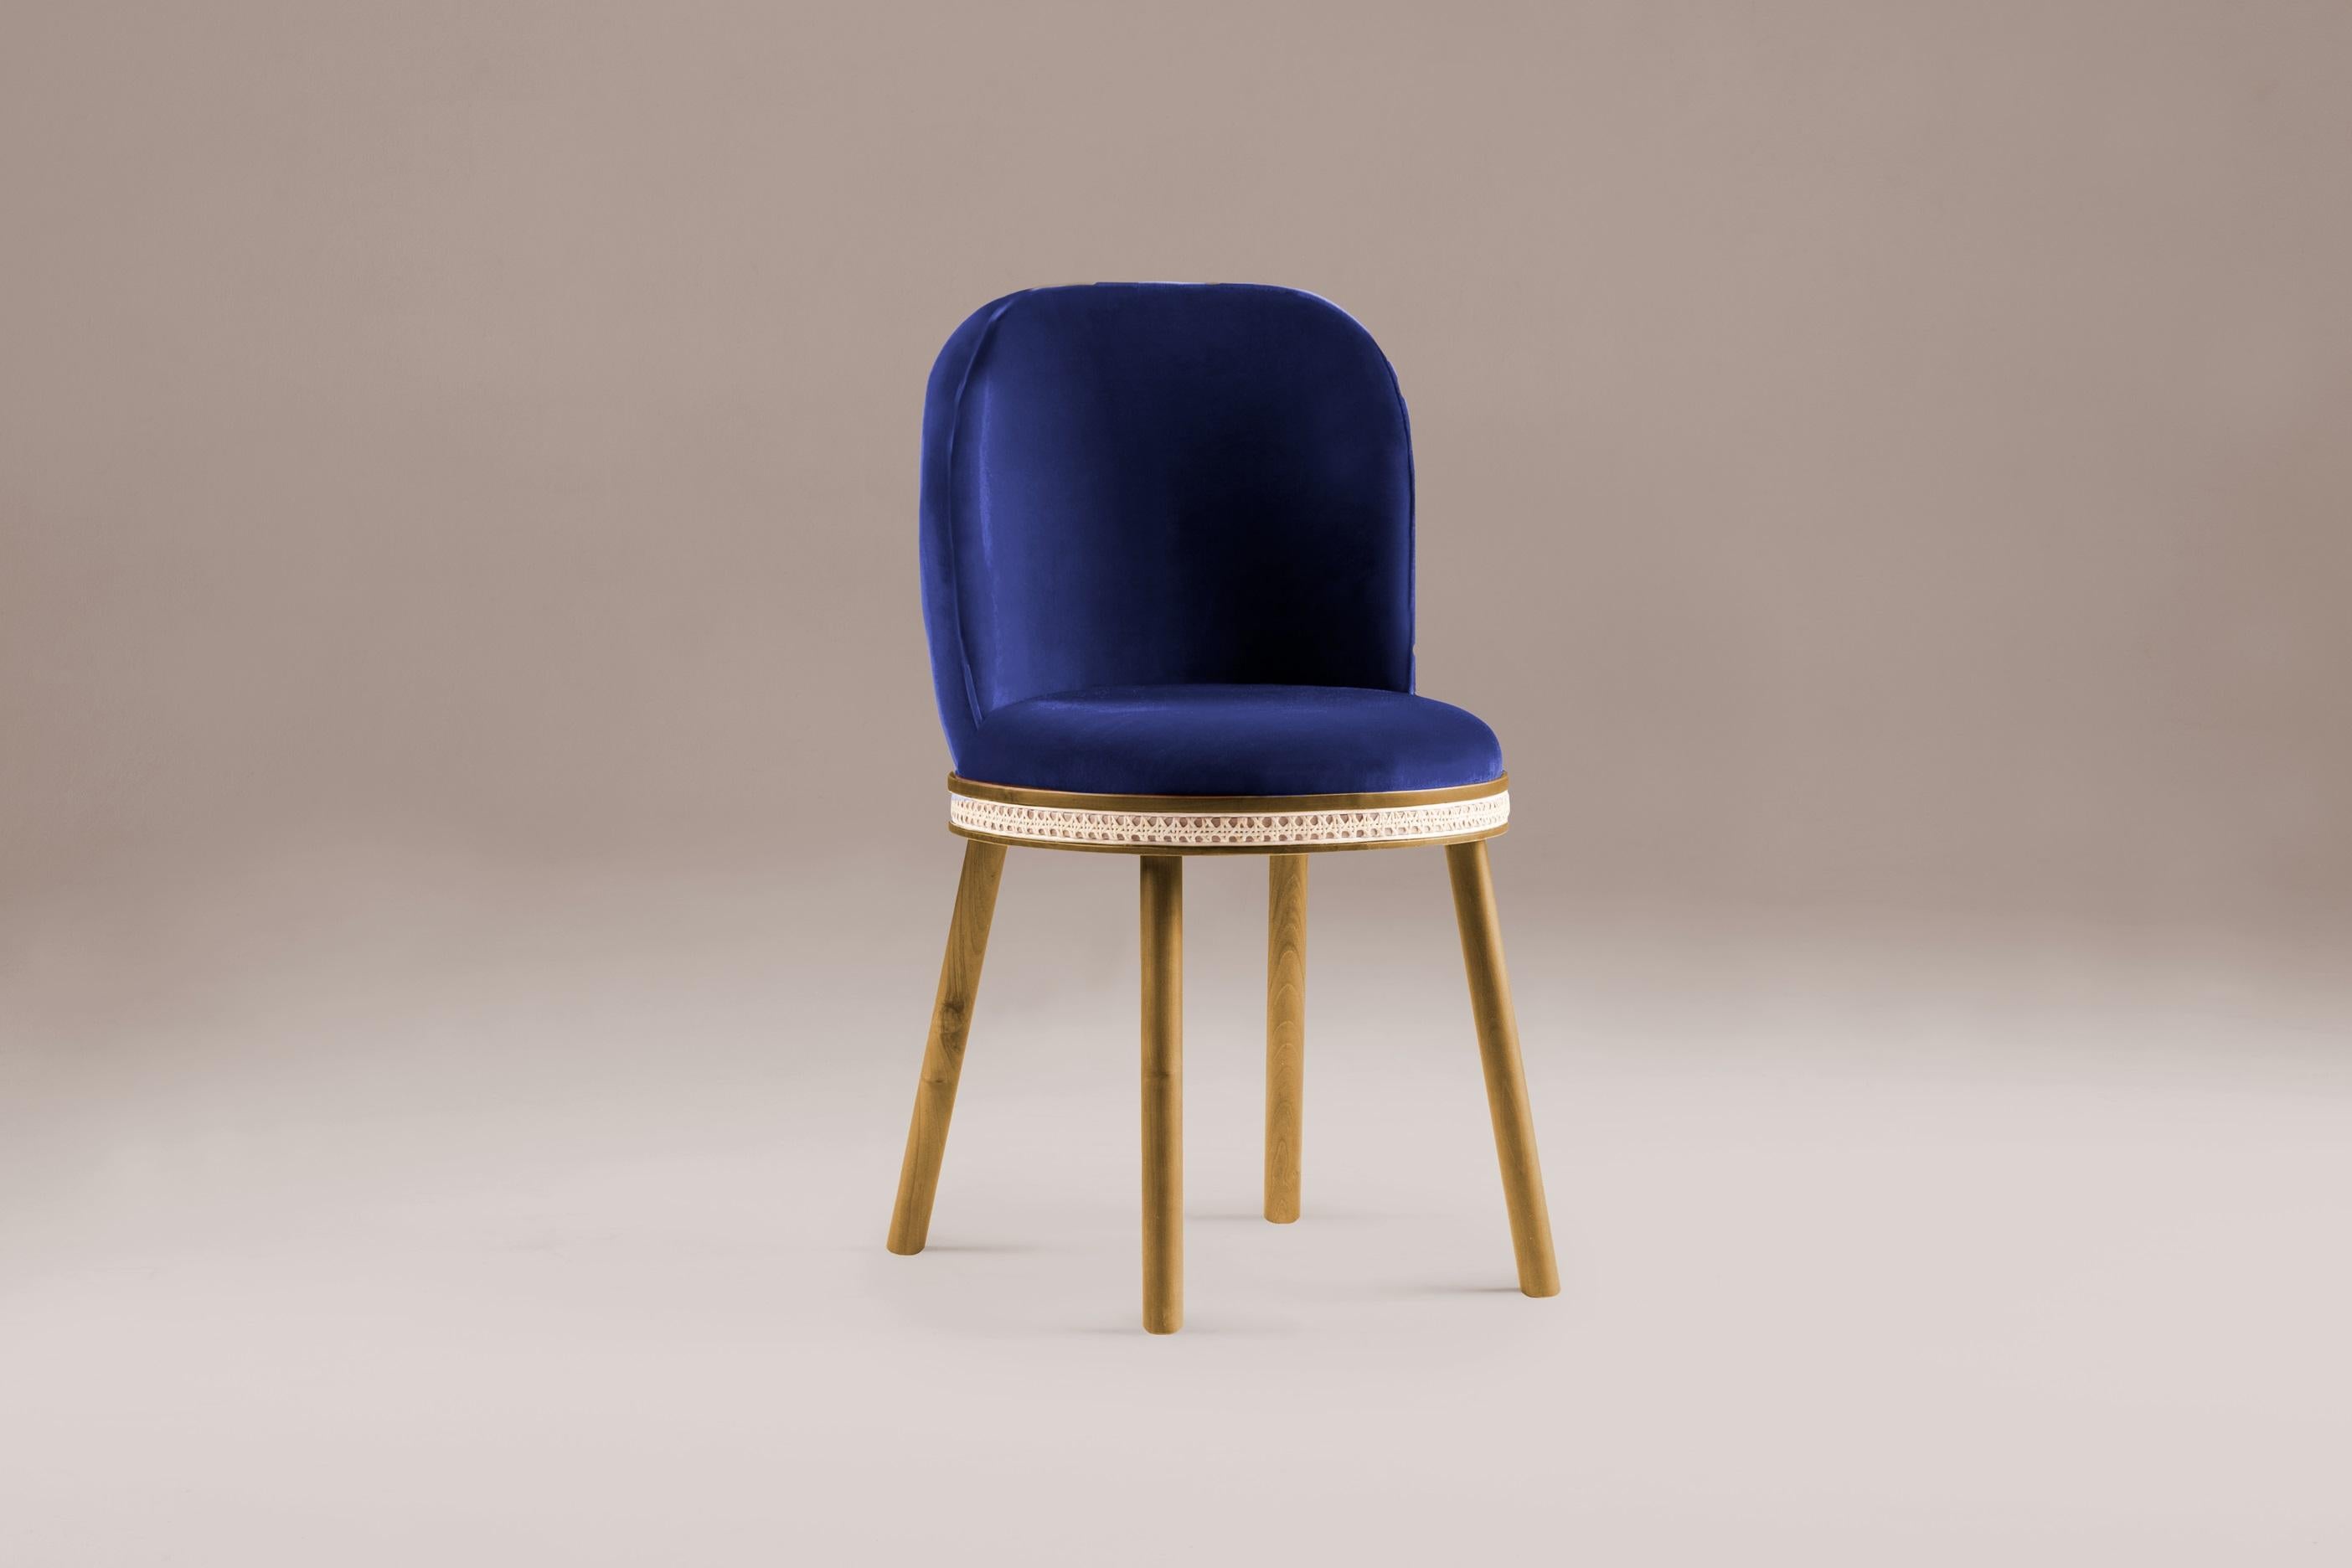 DOOQ Chaise de salle à manger The Modernity Alma avec velours bleu et Wood Wood
La chaise Alma est une chaise personnalisable, où vous pouvez choisir les finitions du tissu et le type de bois.

Dans une pièce qui combine l'esthétique classique et